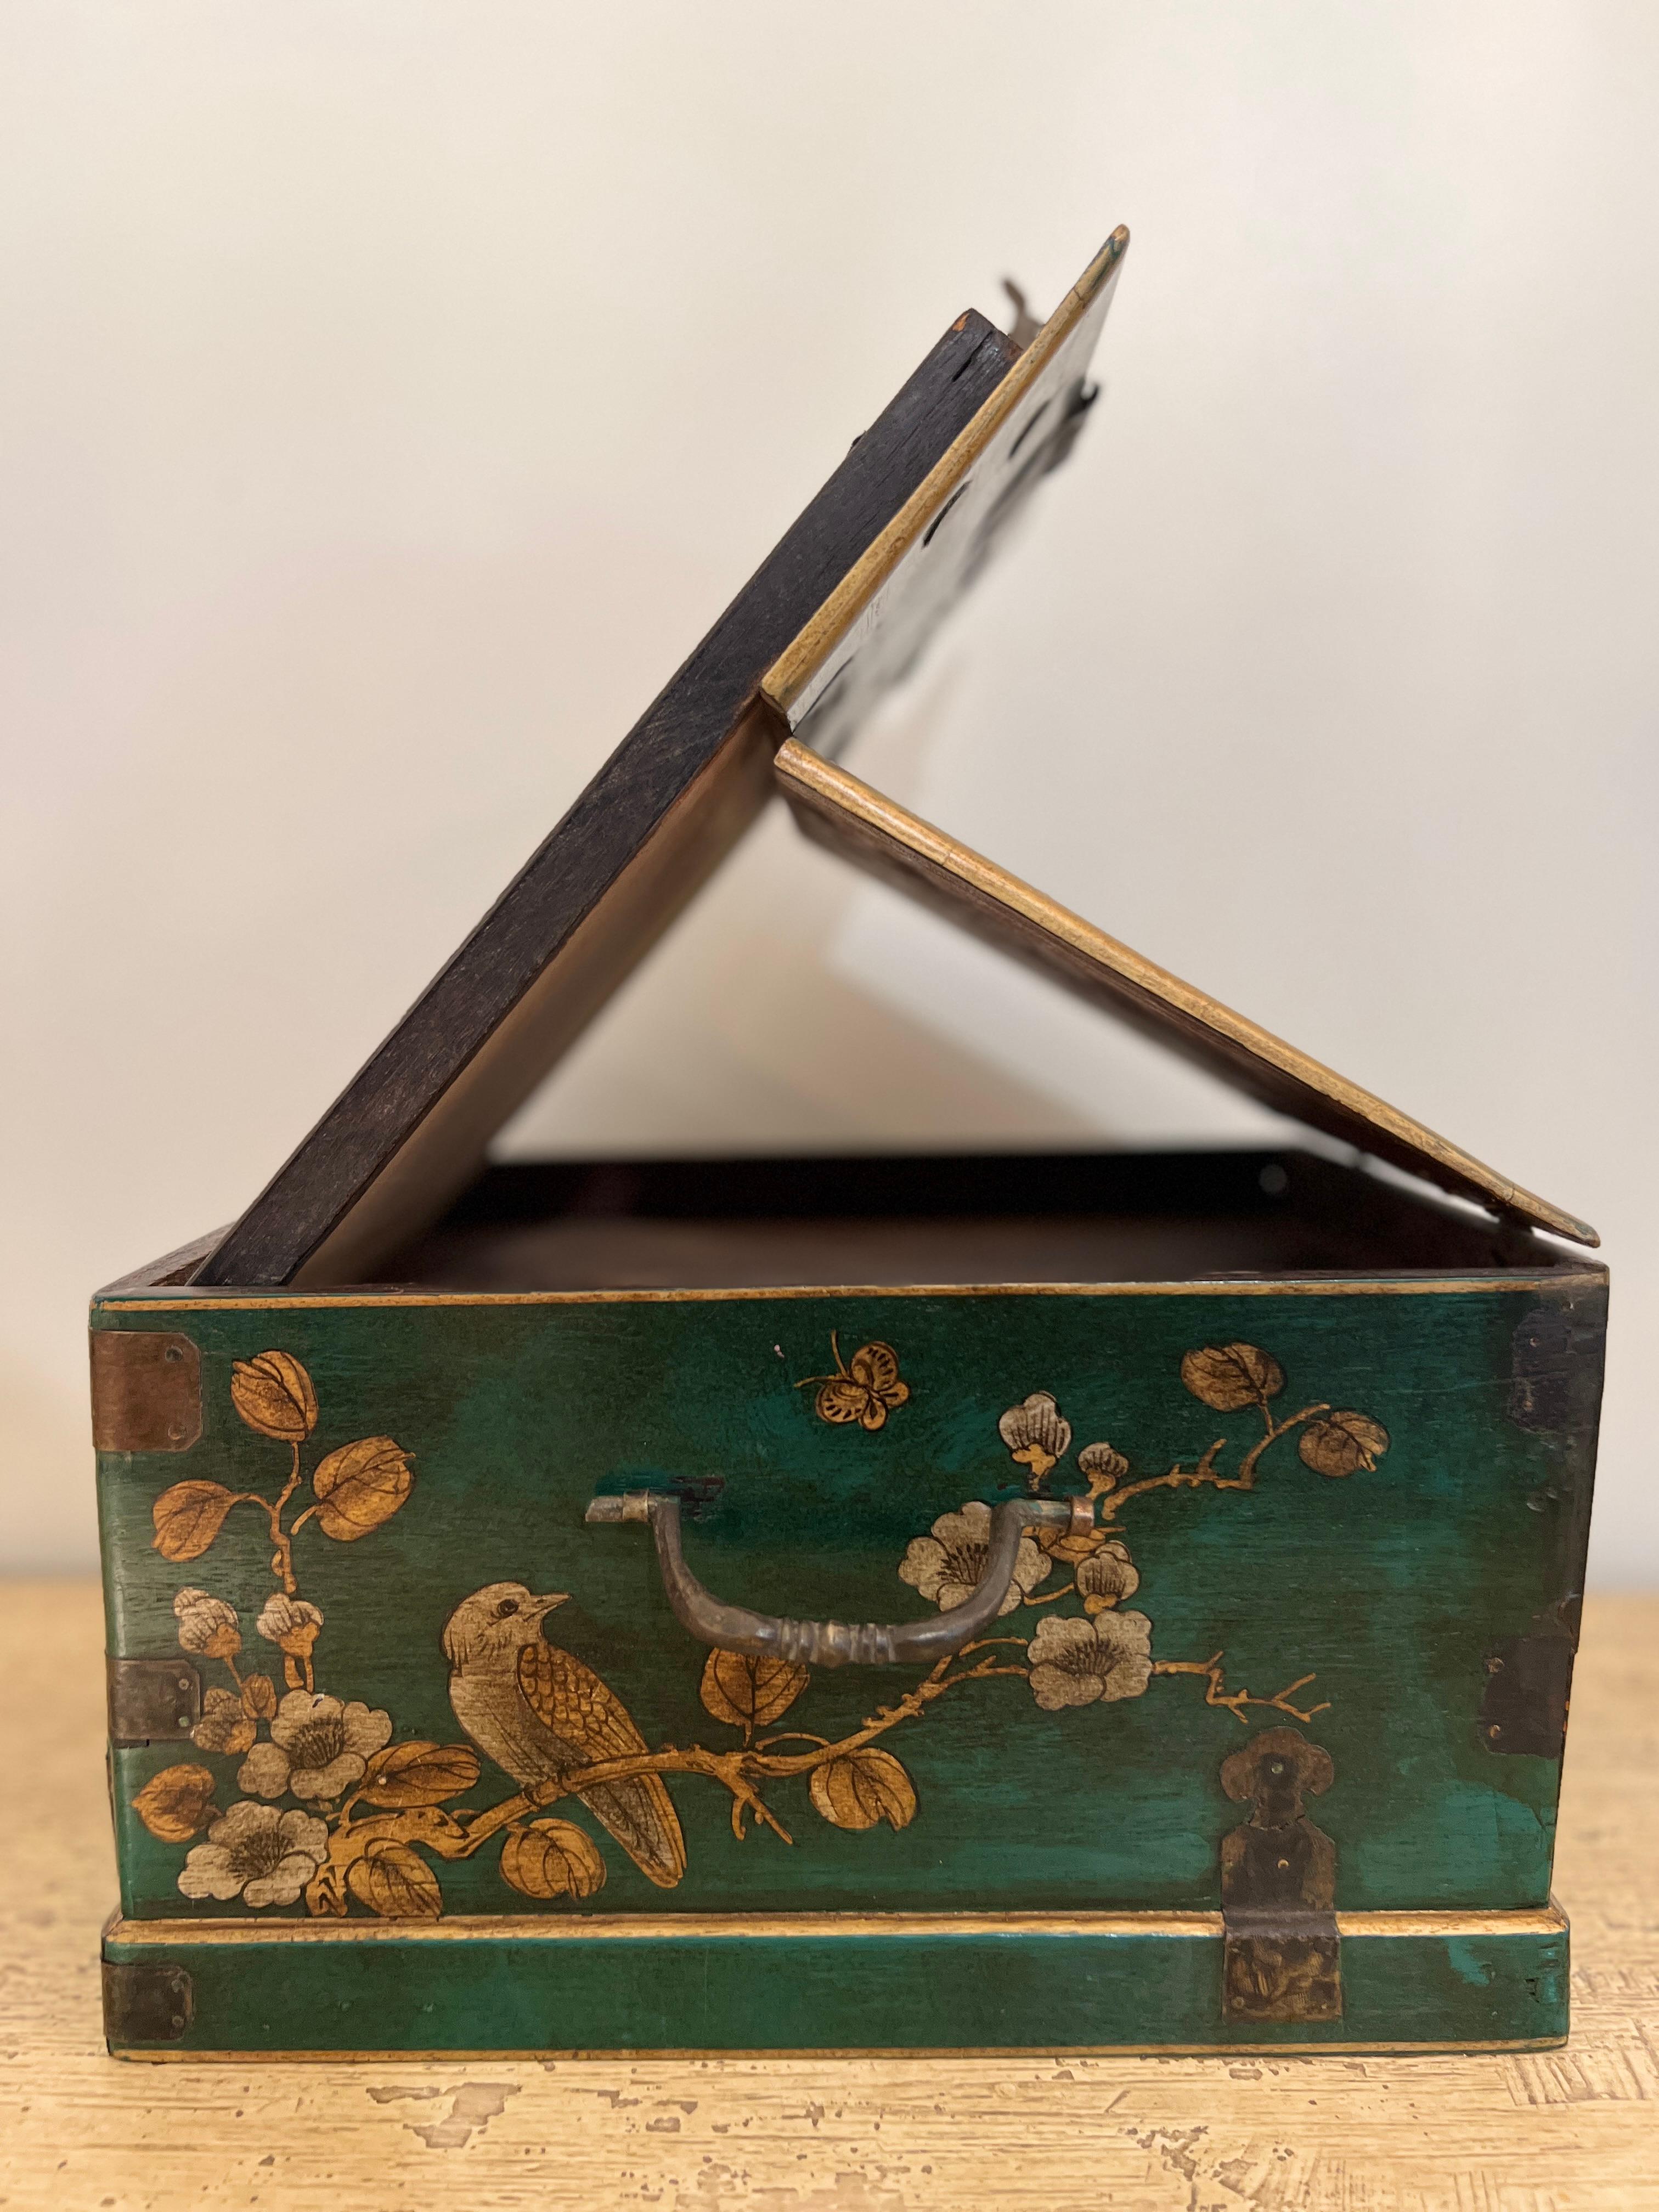 Ancienne boîte à bijoux chinoise en bois, un chef-d'œuvre d'incrustation complexe. Fabriqué à la main par des artisans qualifiés, il allie l'authenticité de l'artisanat chinois à une fonctionnalité polyvalente. Ce coffre intemporel est à la fois un